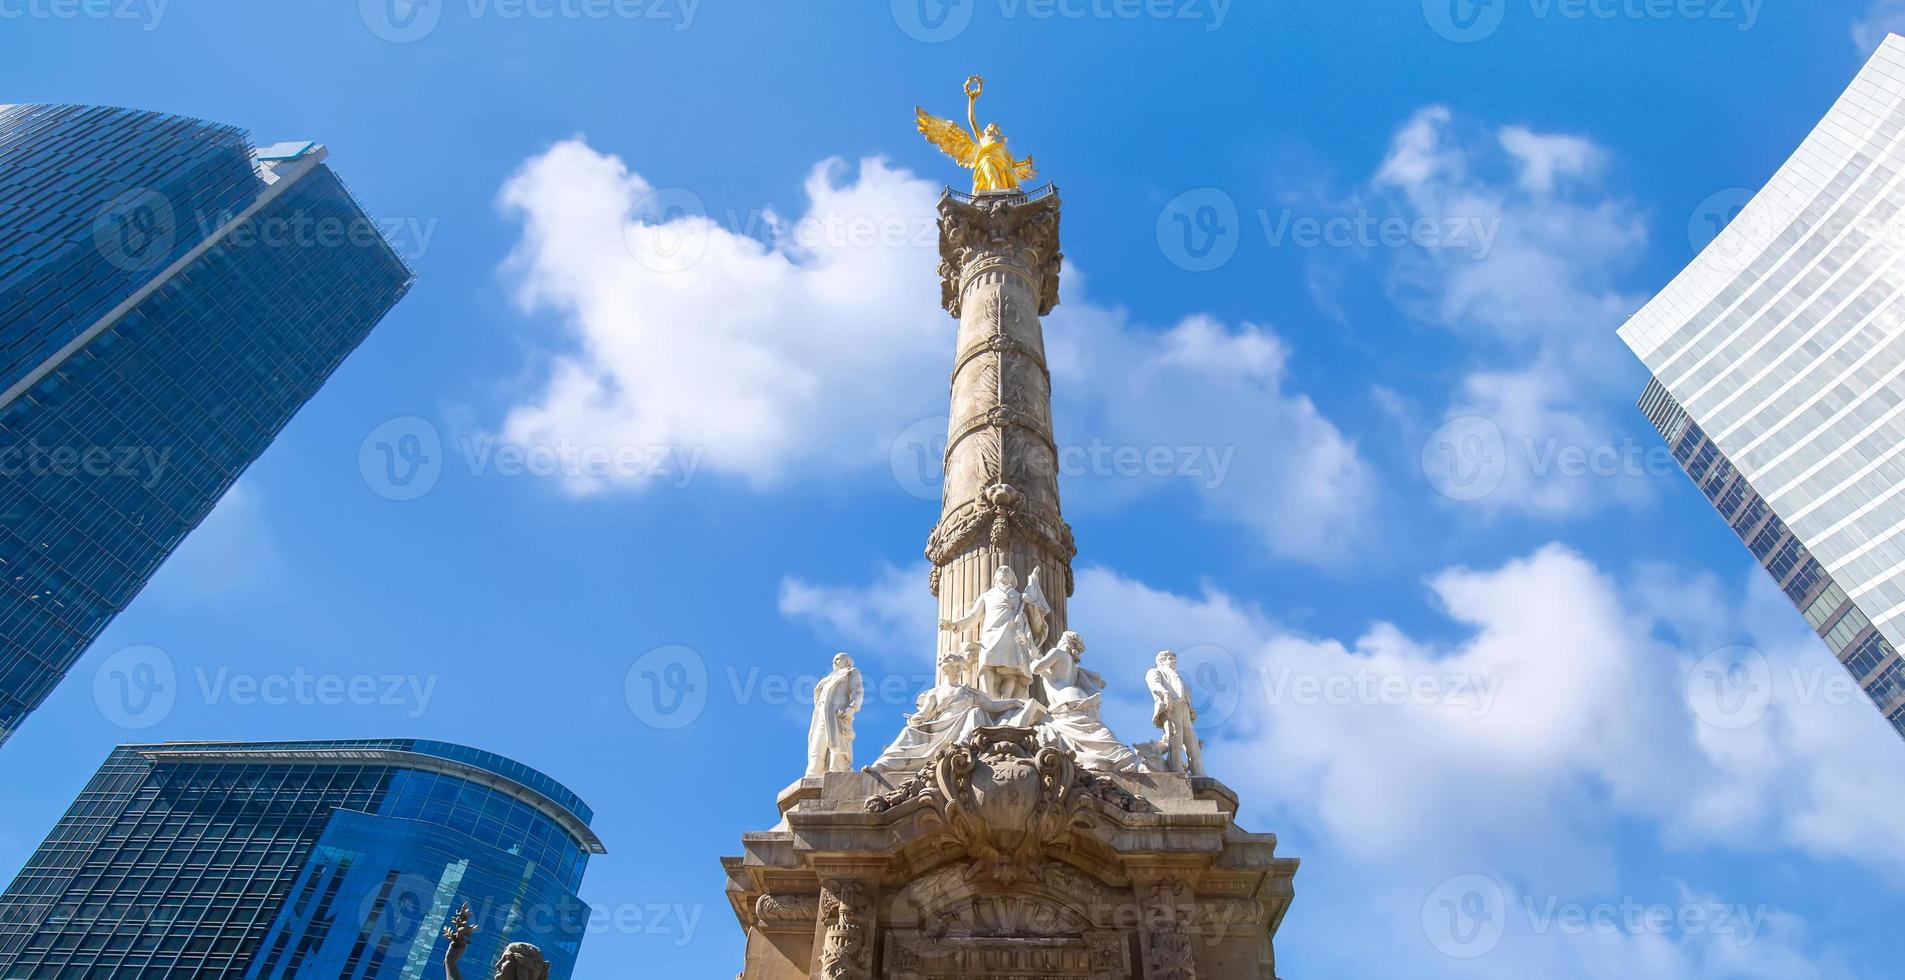 engel van onafhankelijkheidsmonument in het historische centrum van mexico-stad foto